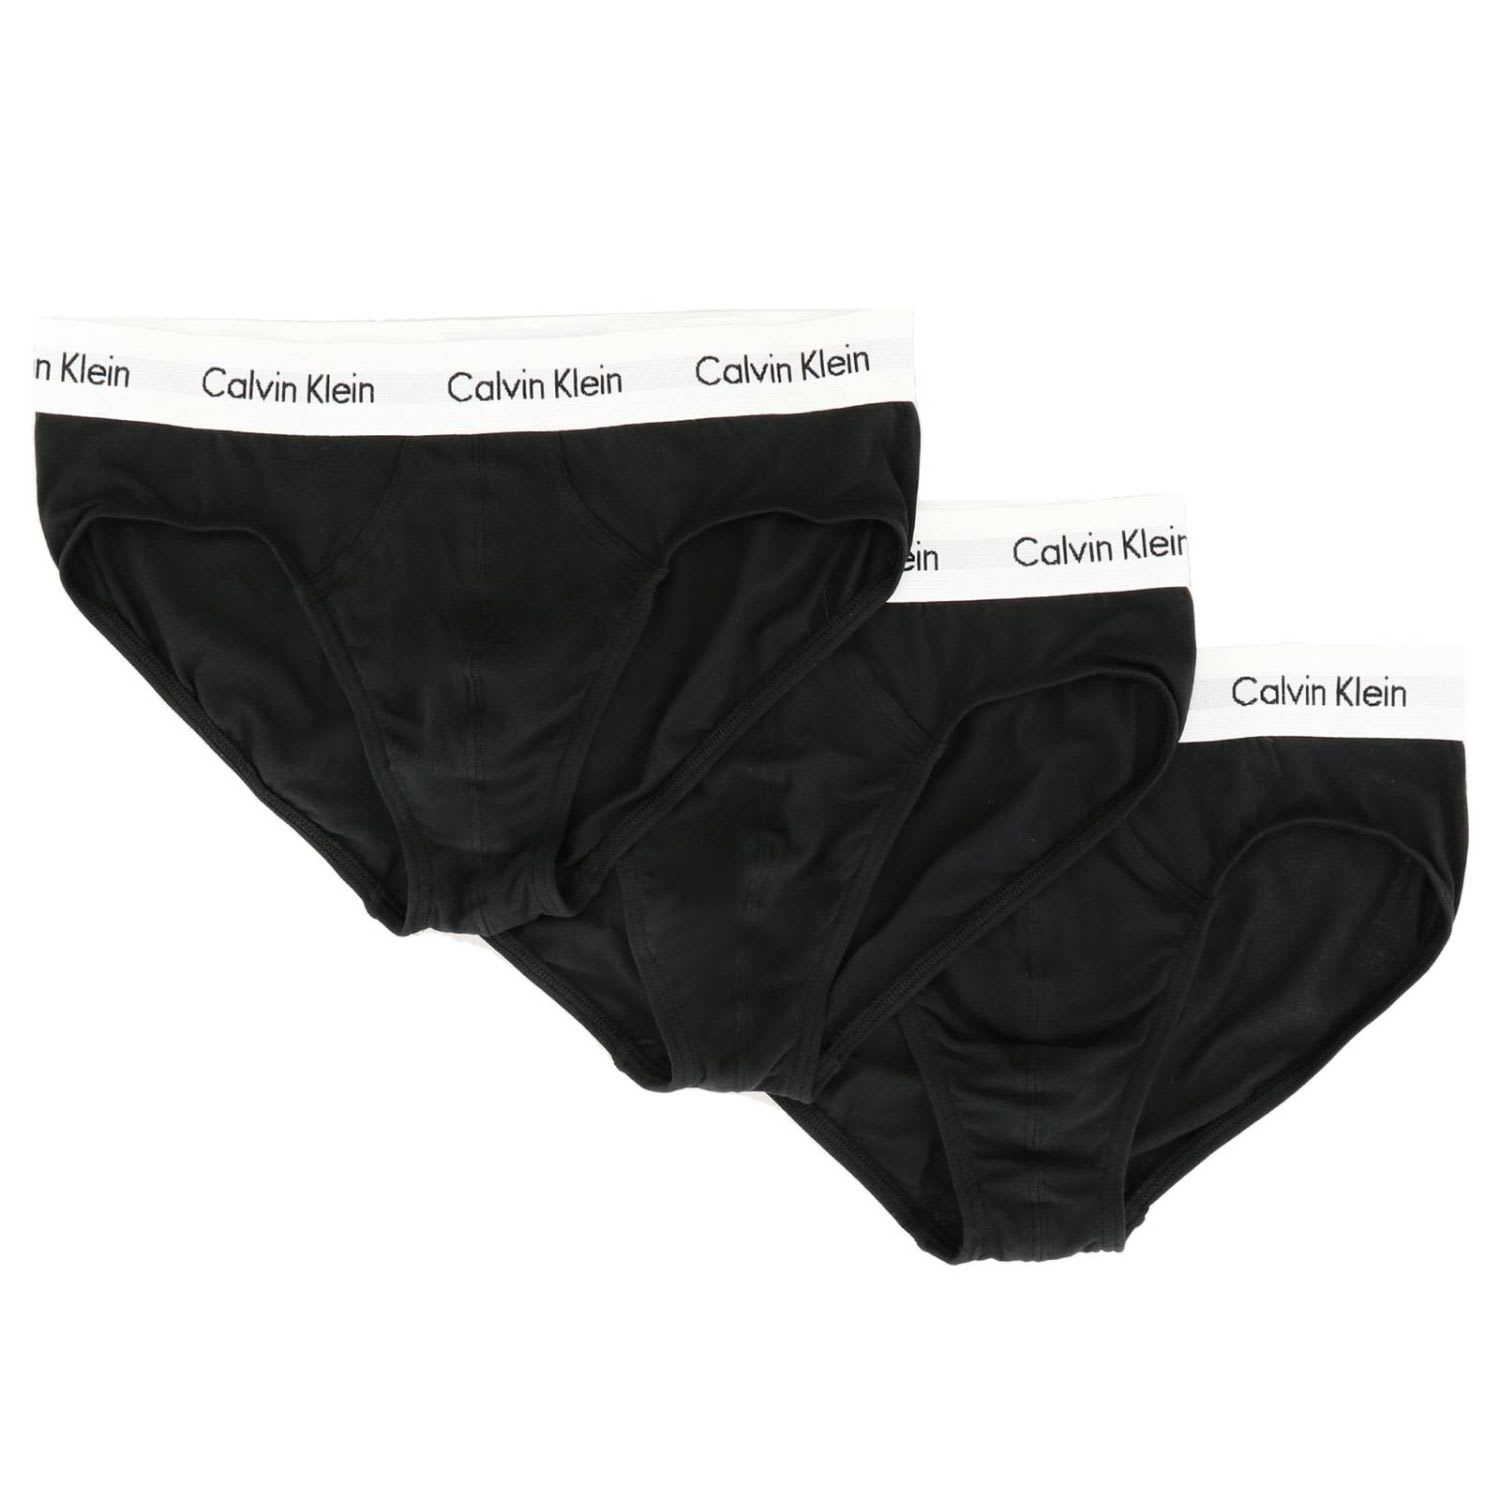 black calvin klein underwear set